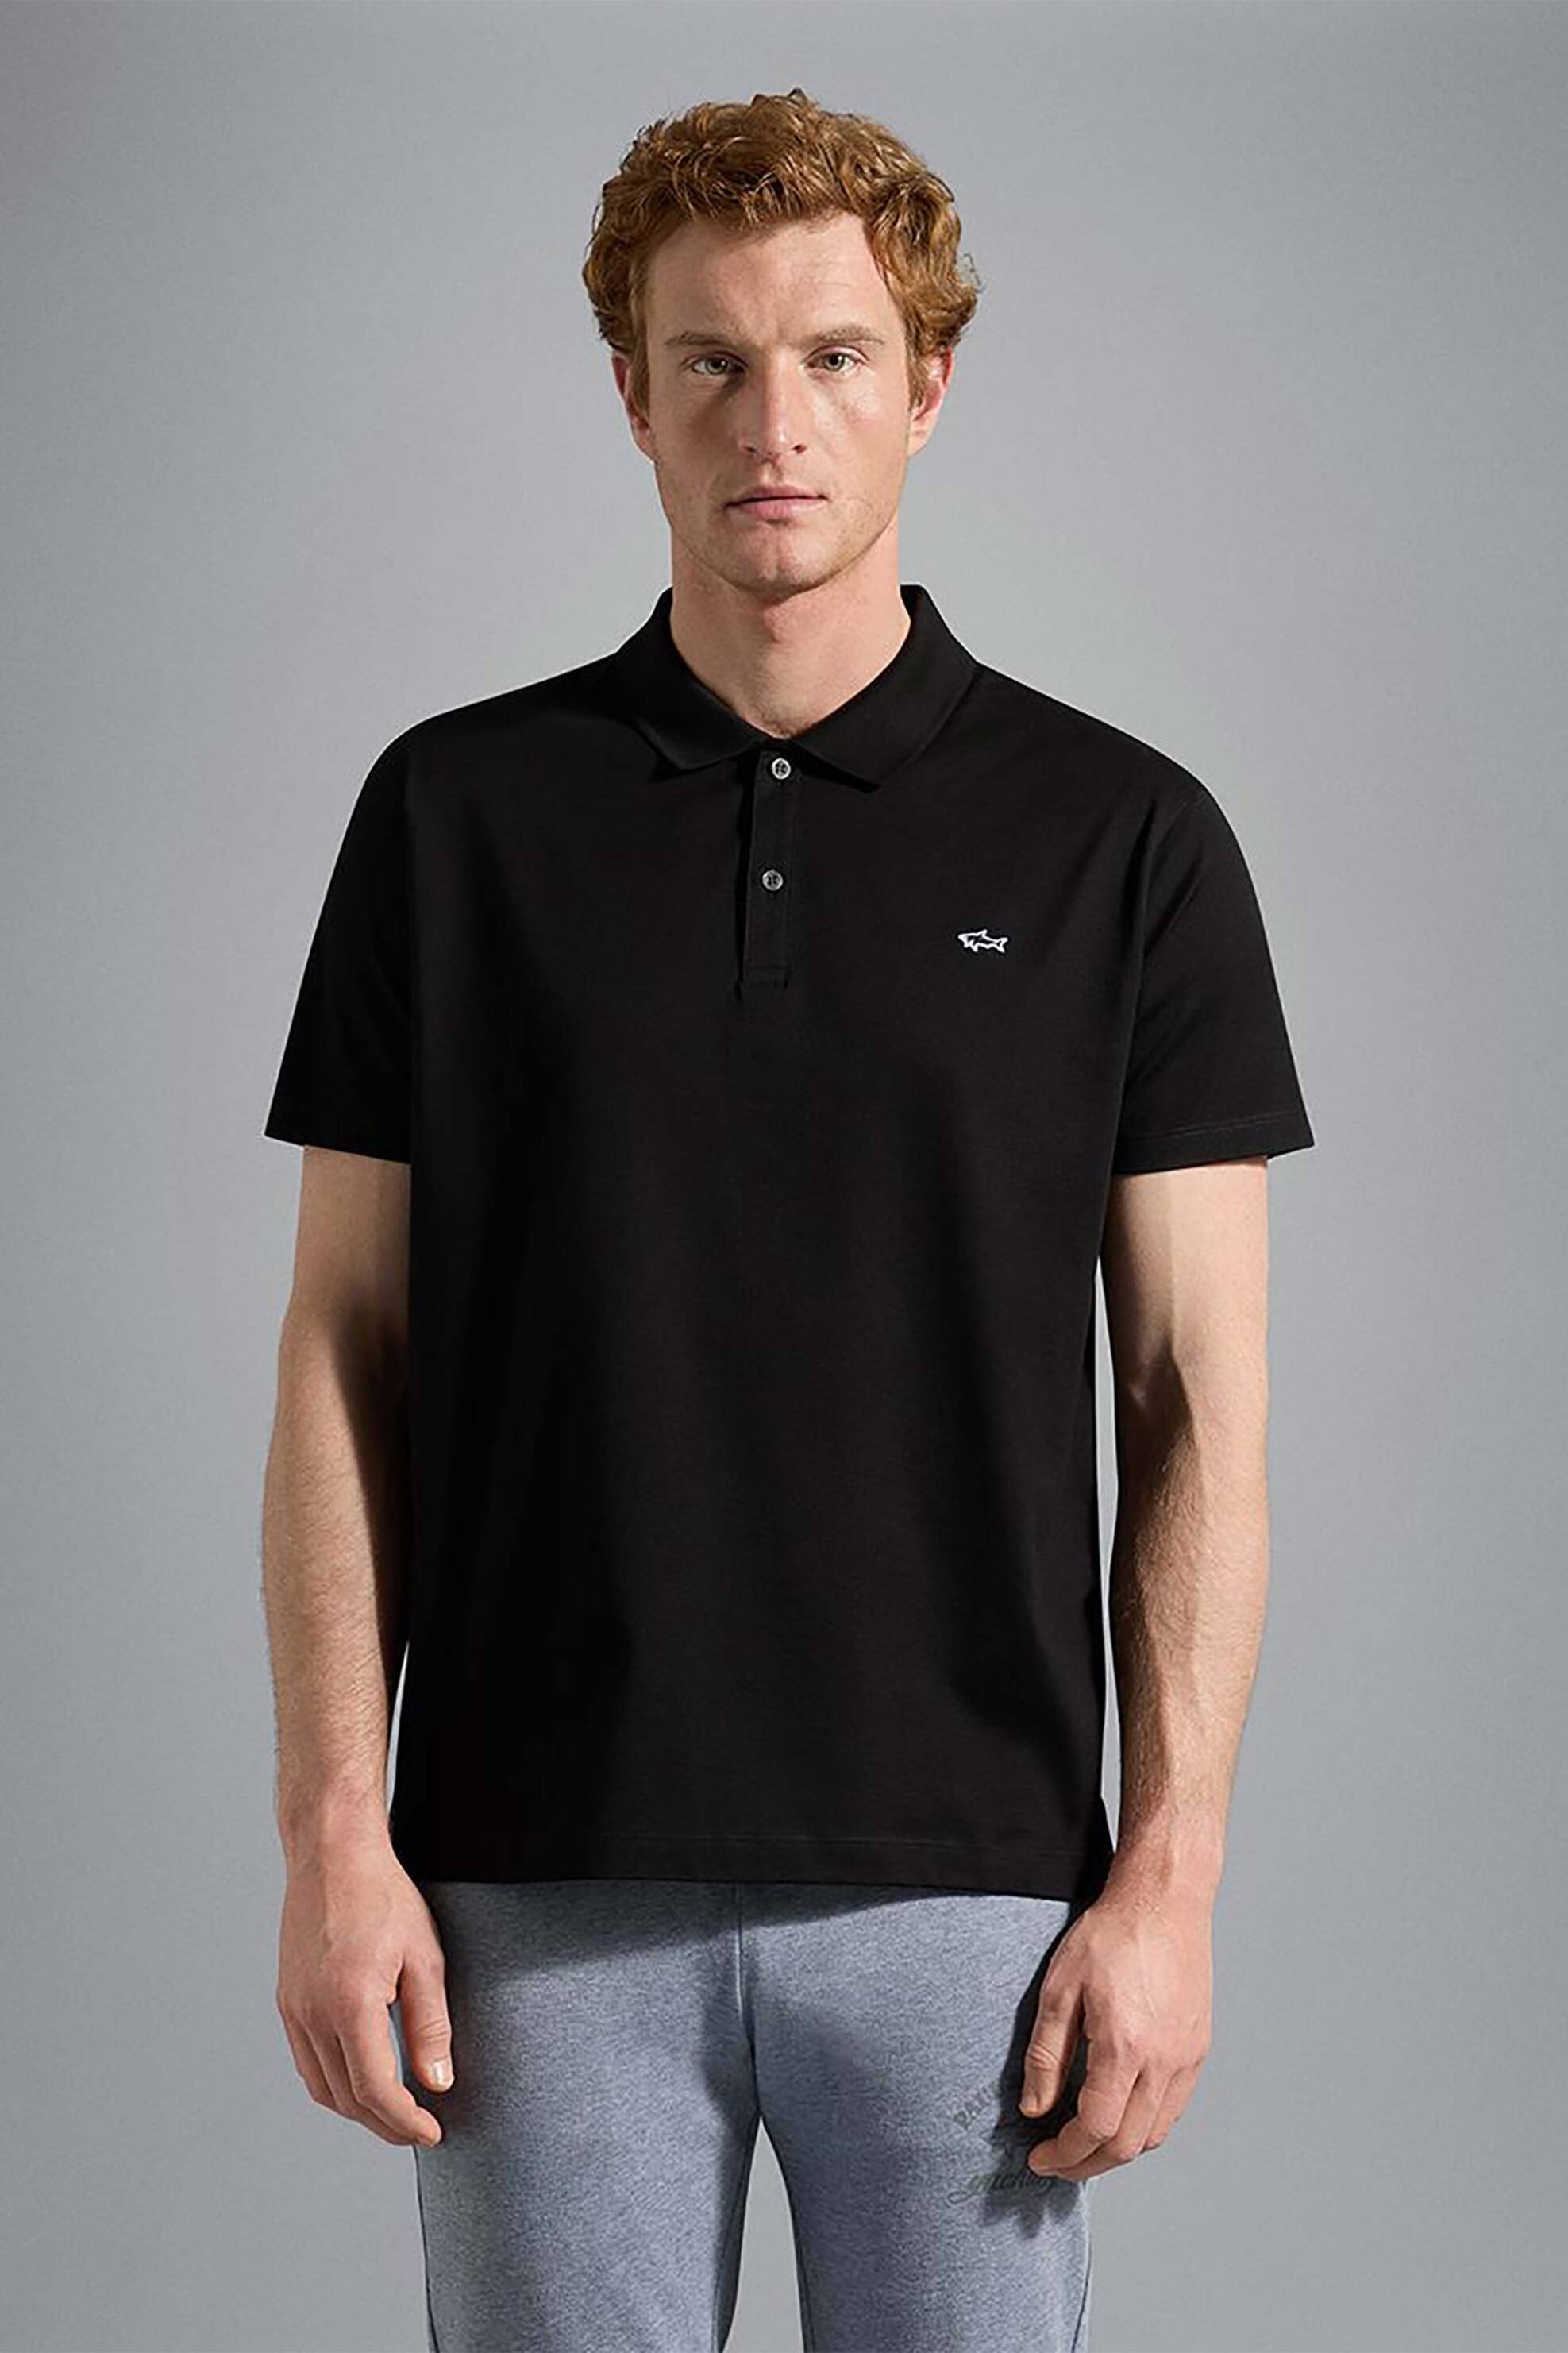 Ανδρική Μόδα > Ανδρικά Ρούχα > Ανδρικές Μπλούζες > Ανδρικές Μπλούζες Πολο Paul&Shark ανδρική πόλο μπλούζα μονόχρωμη με κεντημένο λογότυπο Regular Fit - C0P1013 Μαύρο